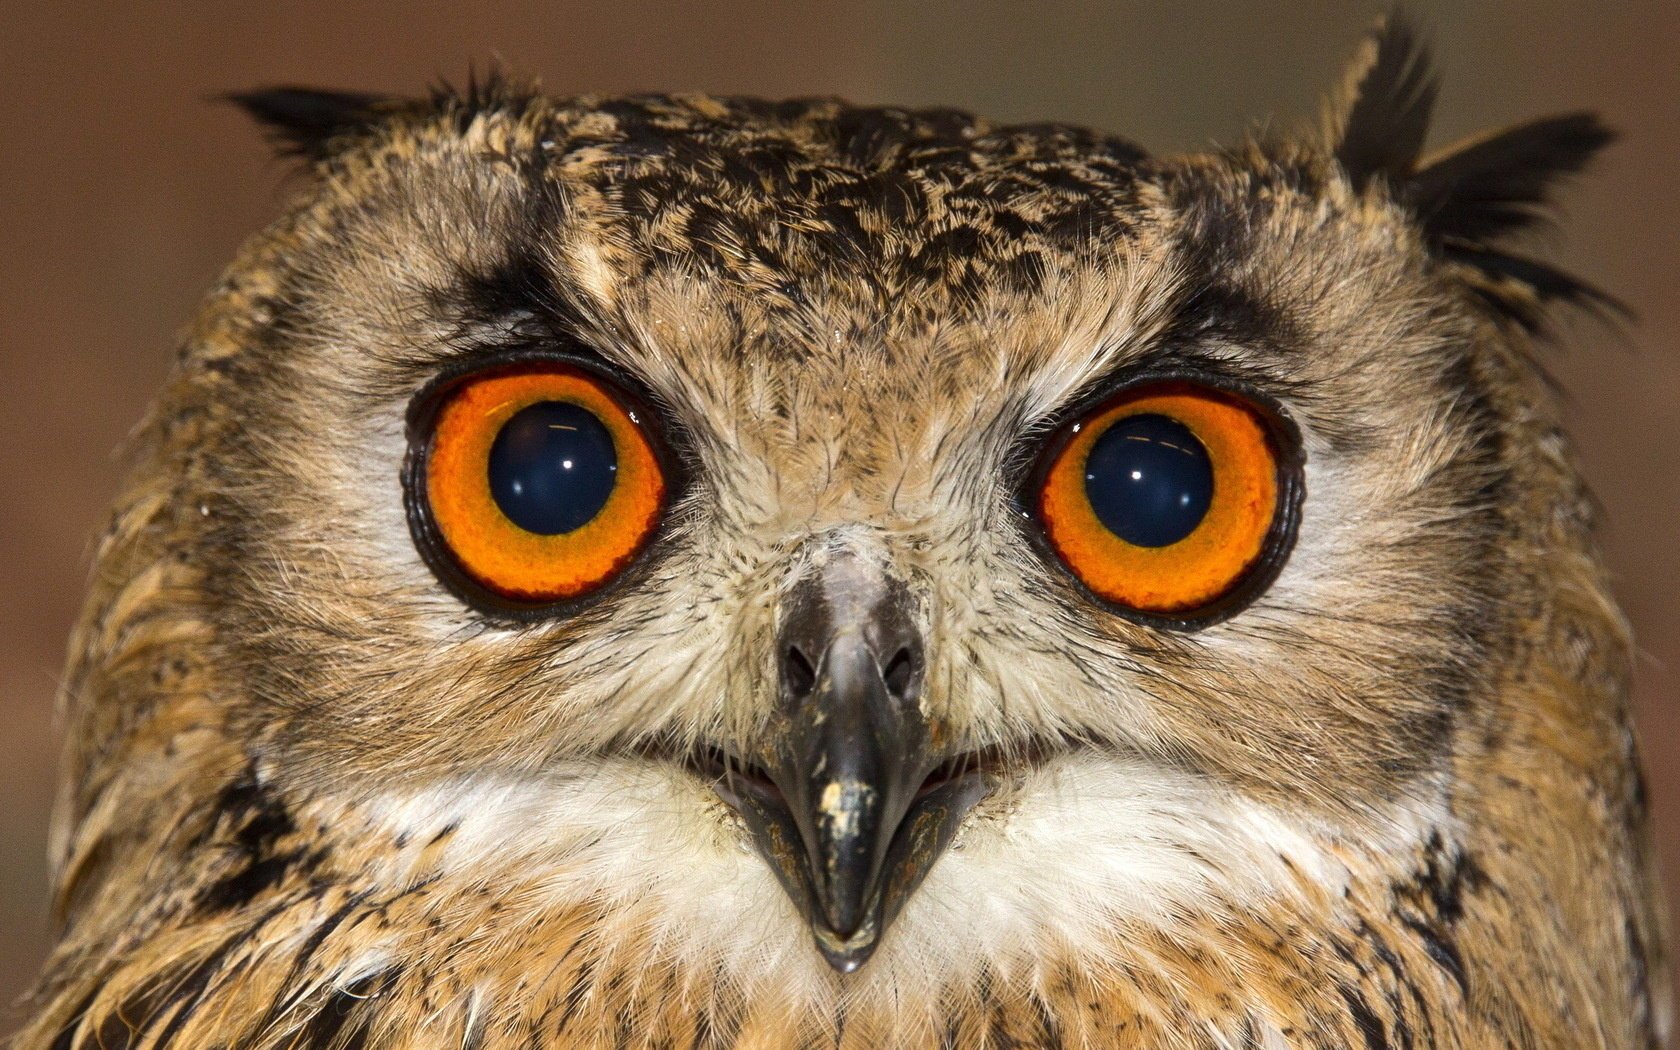 Duviri owl